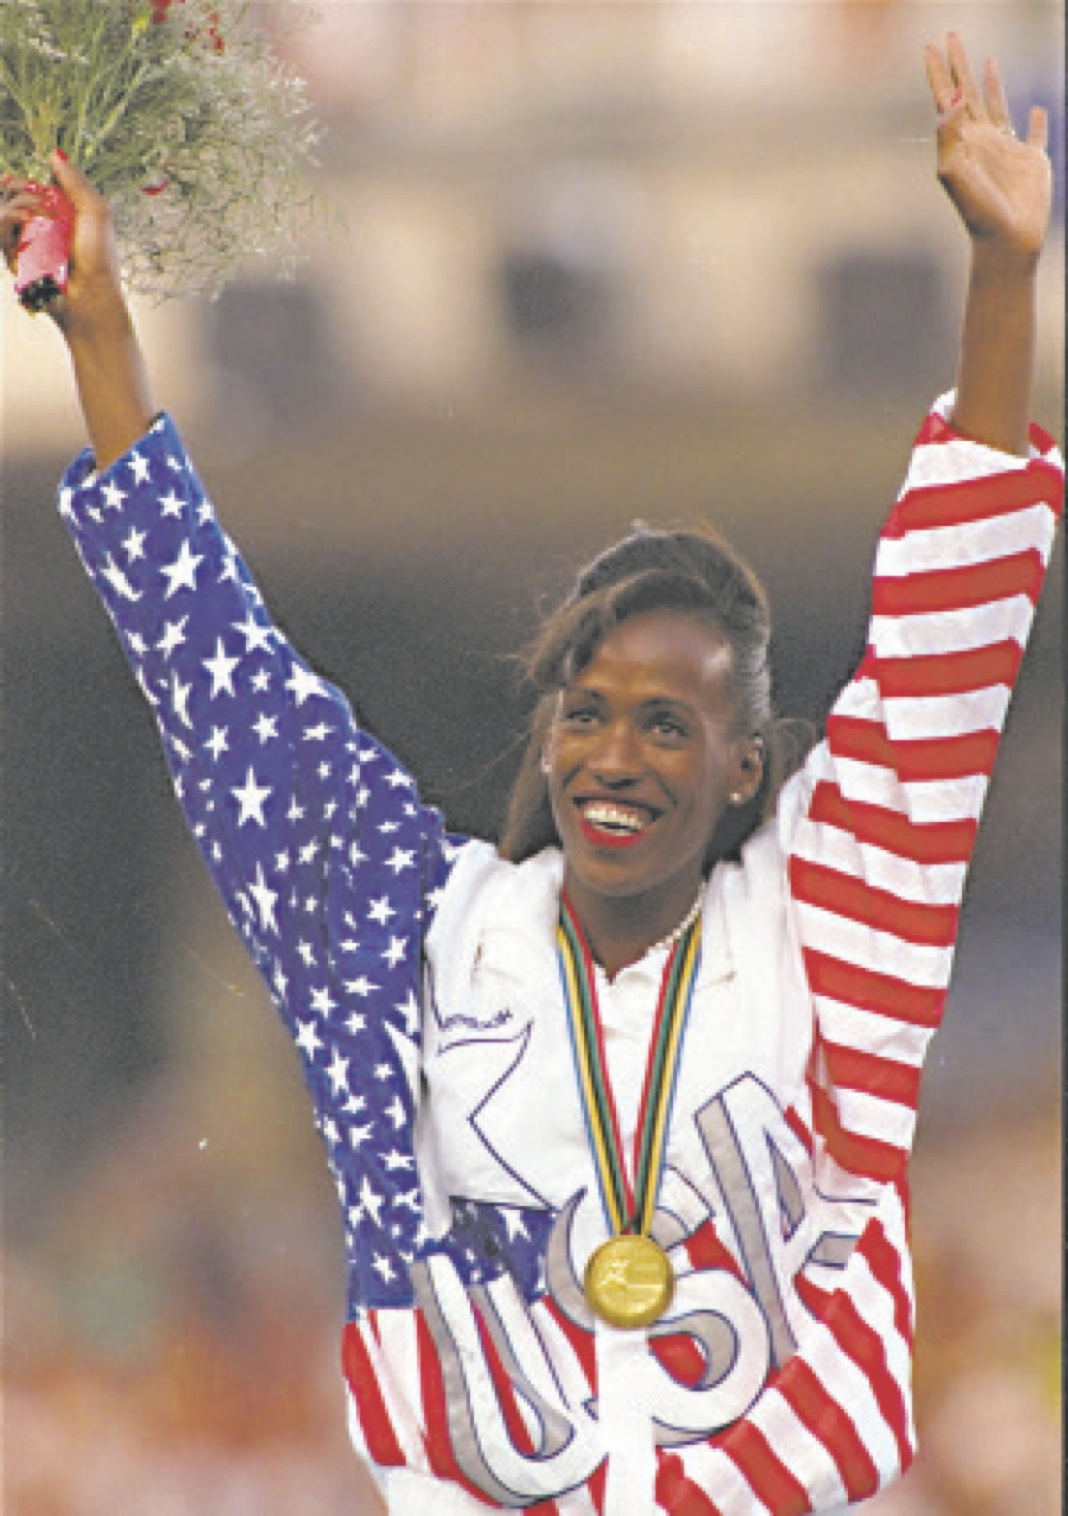 African-American women history-makers in sports Jackie Joyner-Kersee